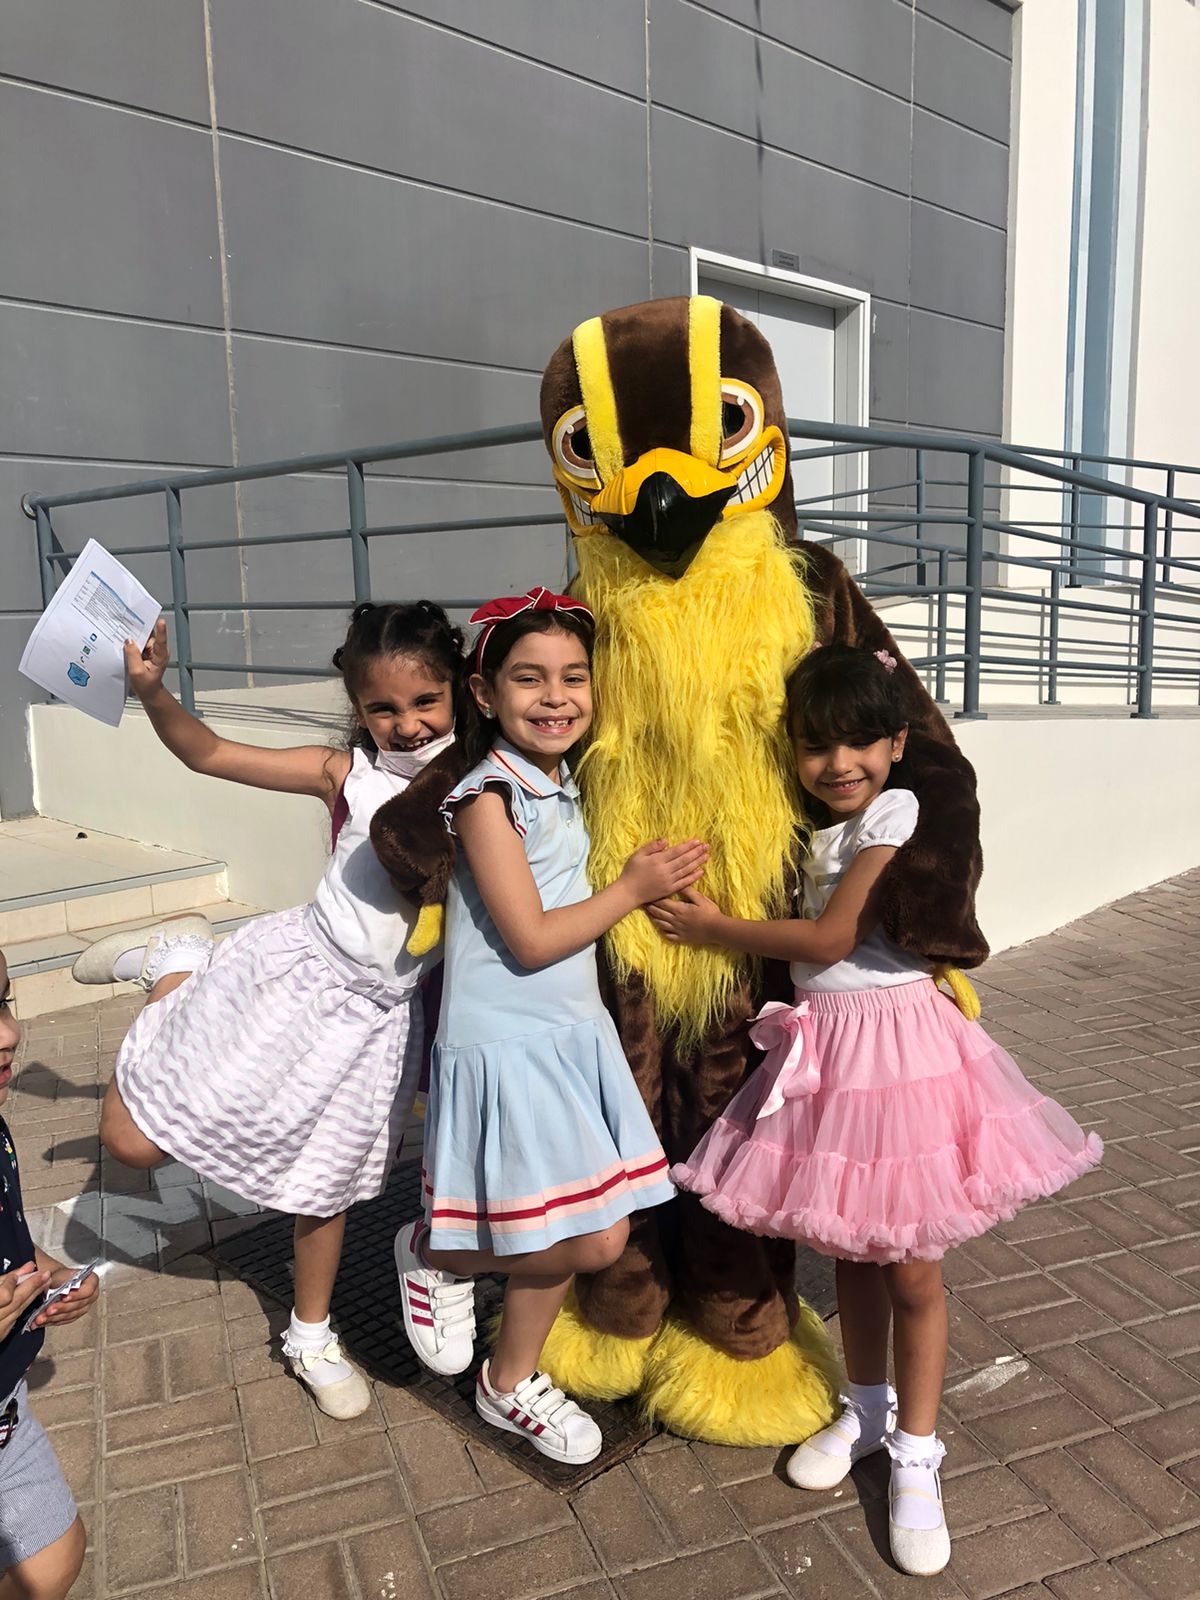 Fotos vom Festival of Schools in der GEMS FirstPoint School in Dubai. Hier umarmen Kinder einen der herumlaufenden Charaktere.